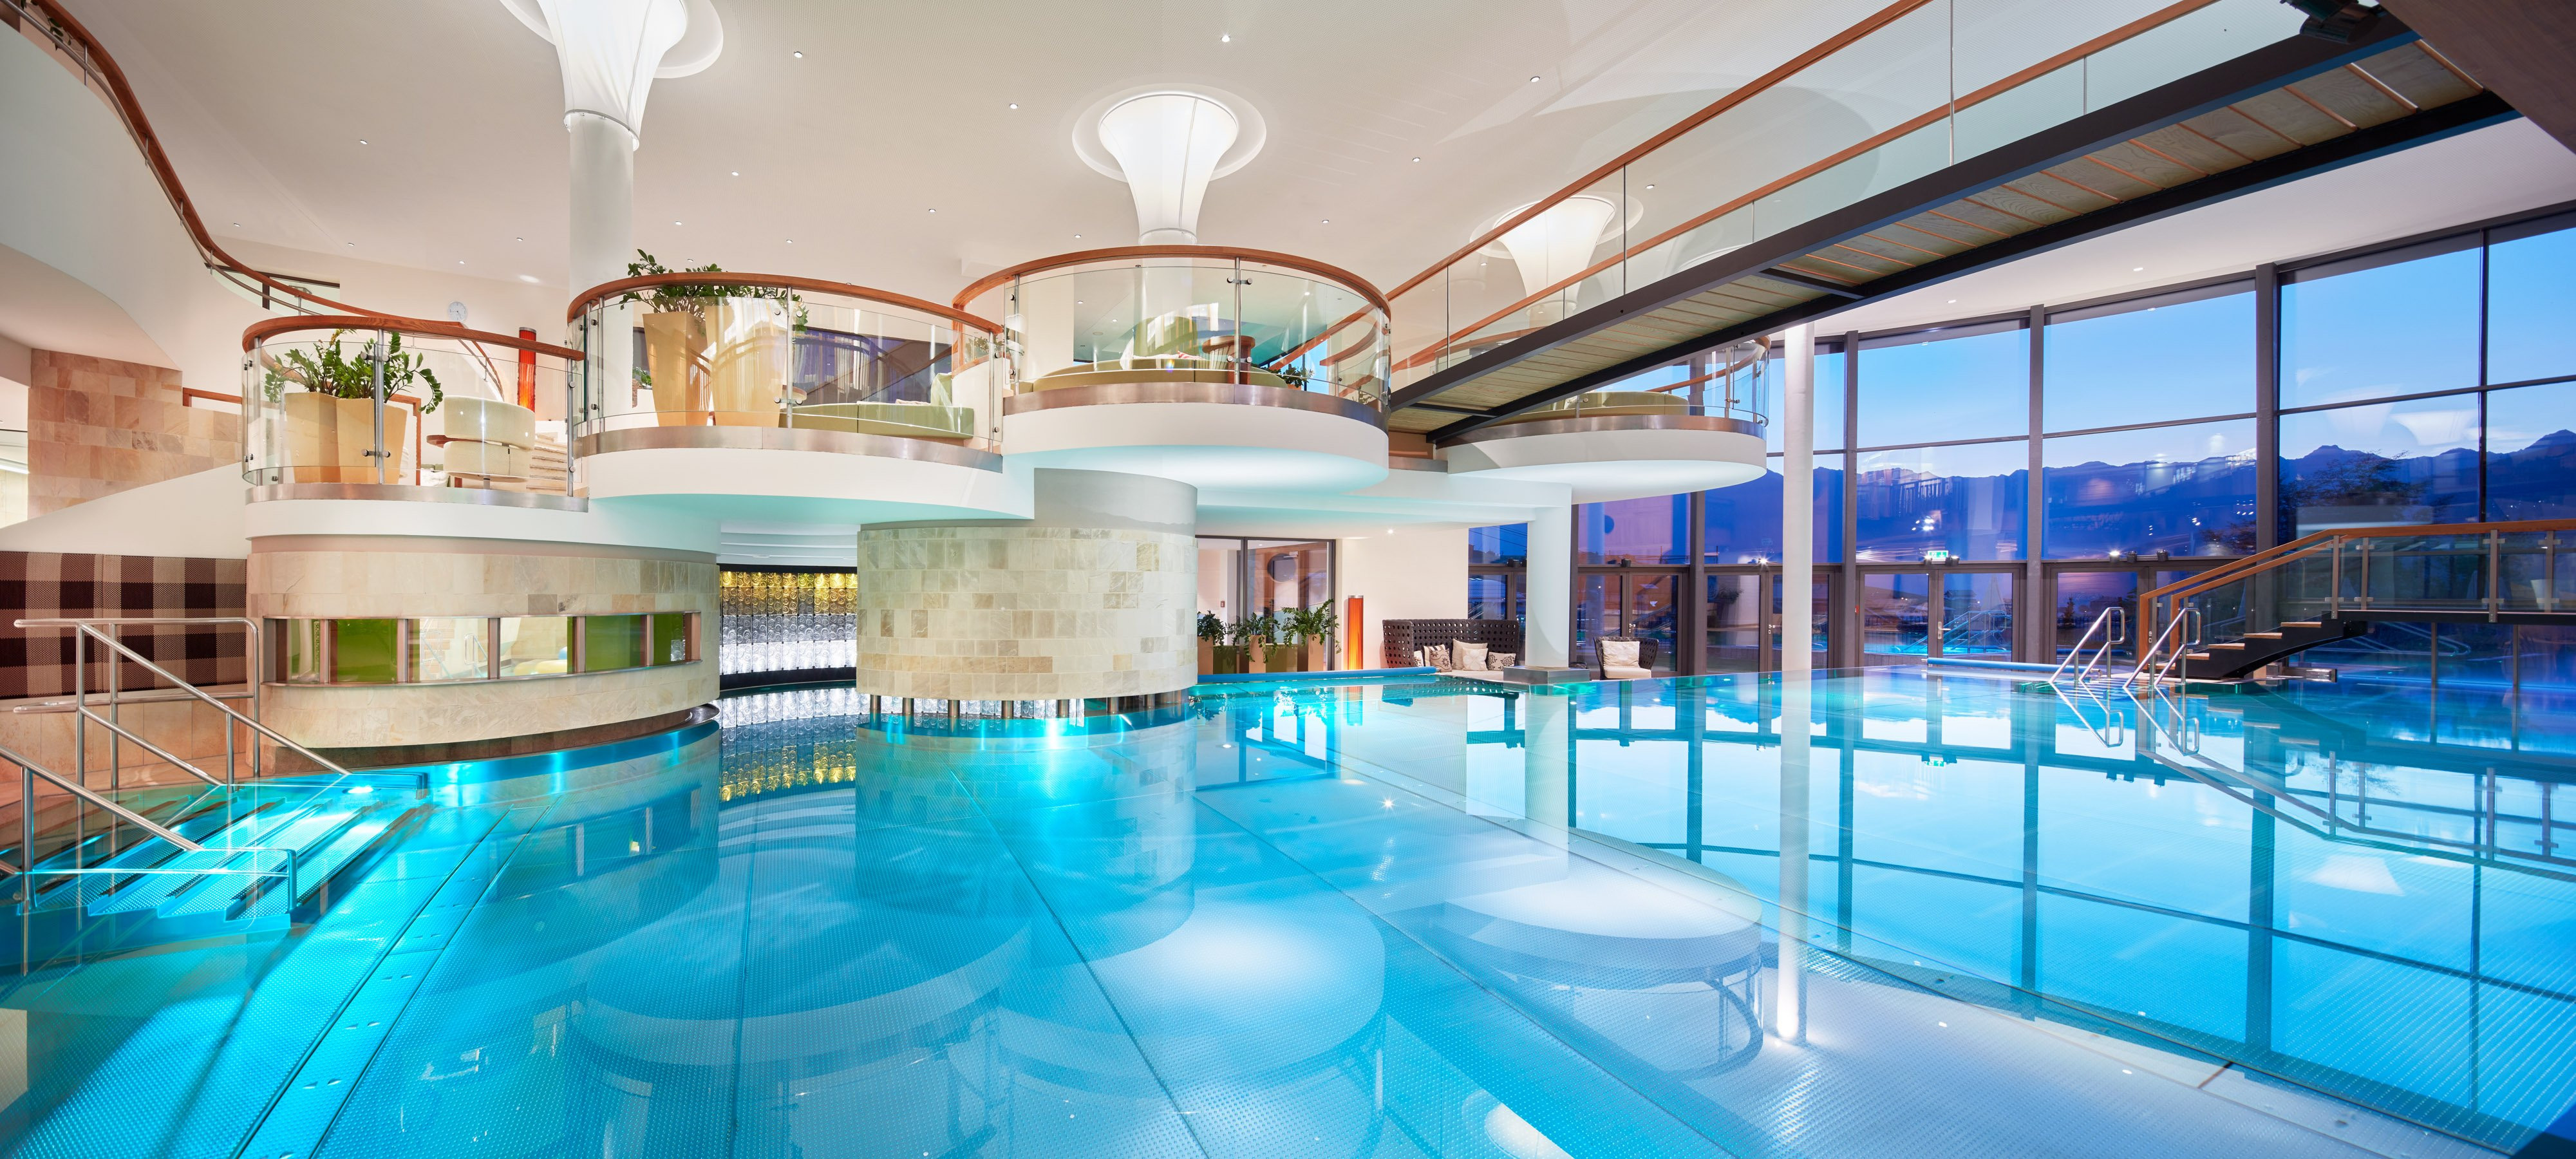 Hotel Mit Schwimmbad
 Hotel mit Schwimmbad & Pool Ihr Schlosshotel Fiss